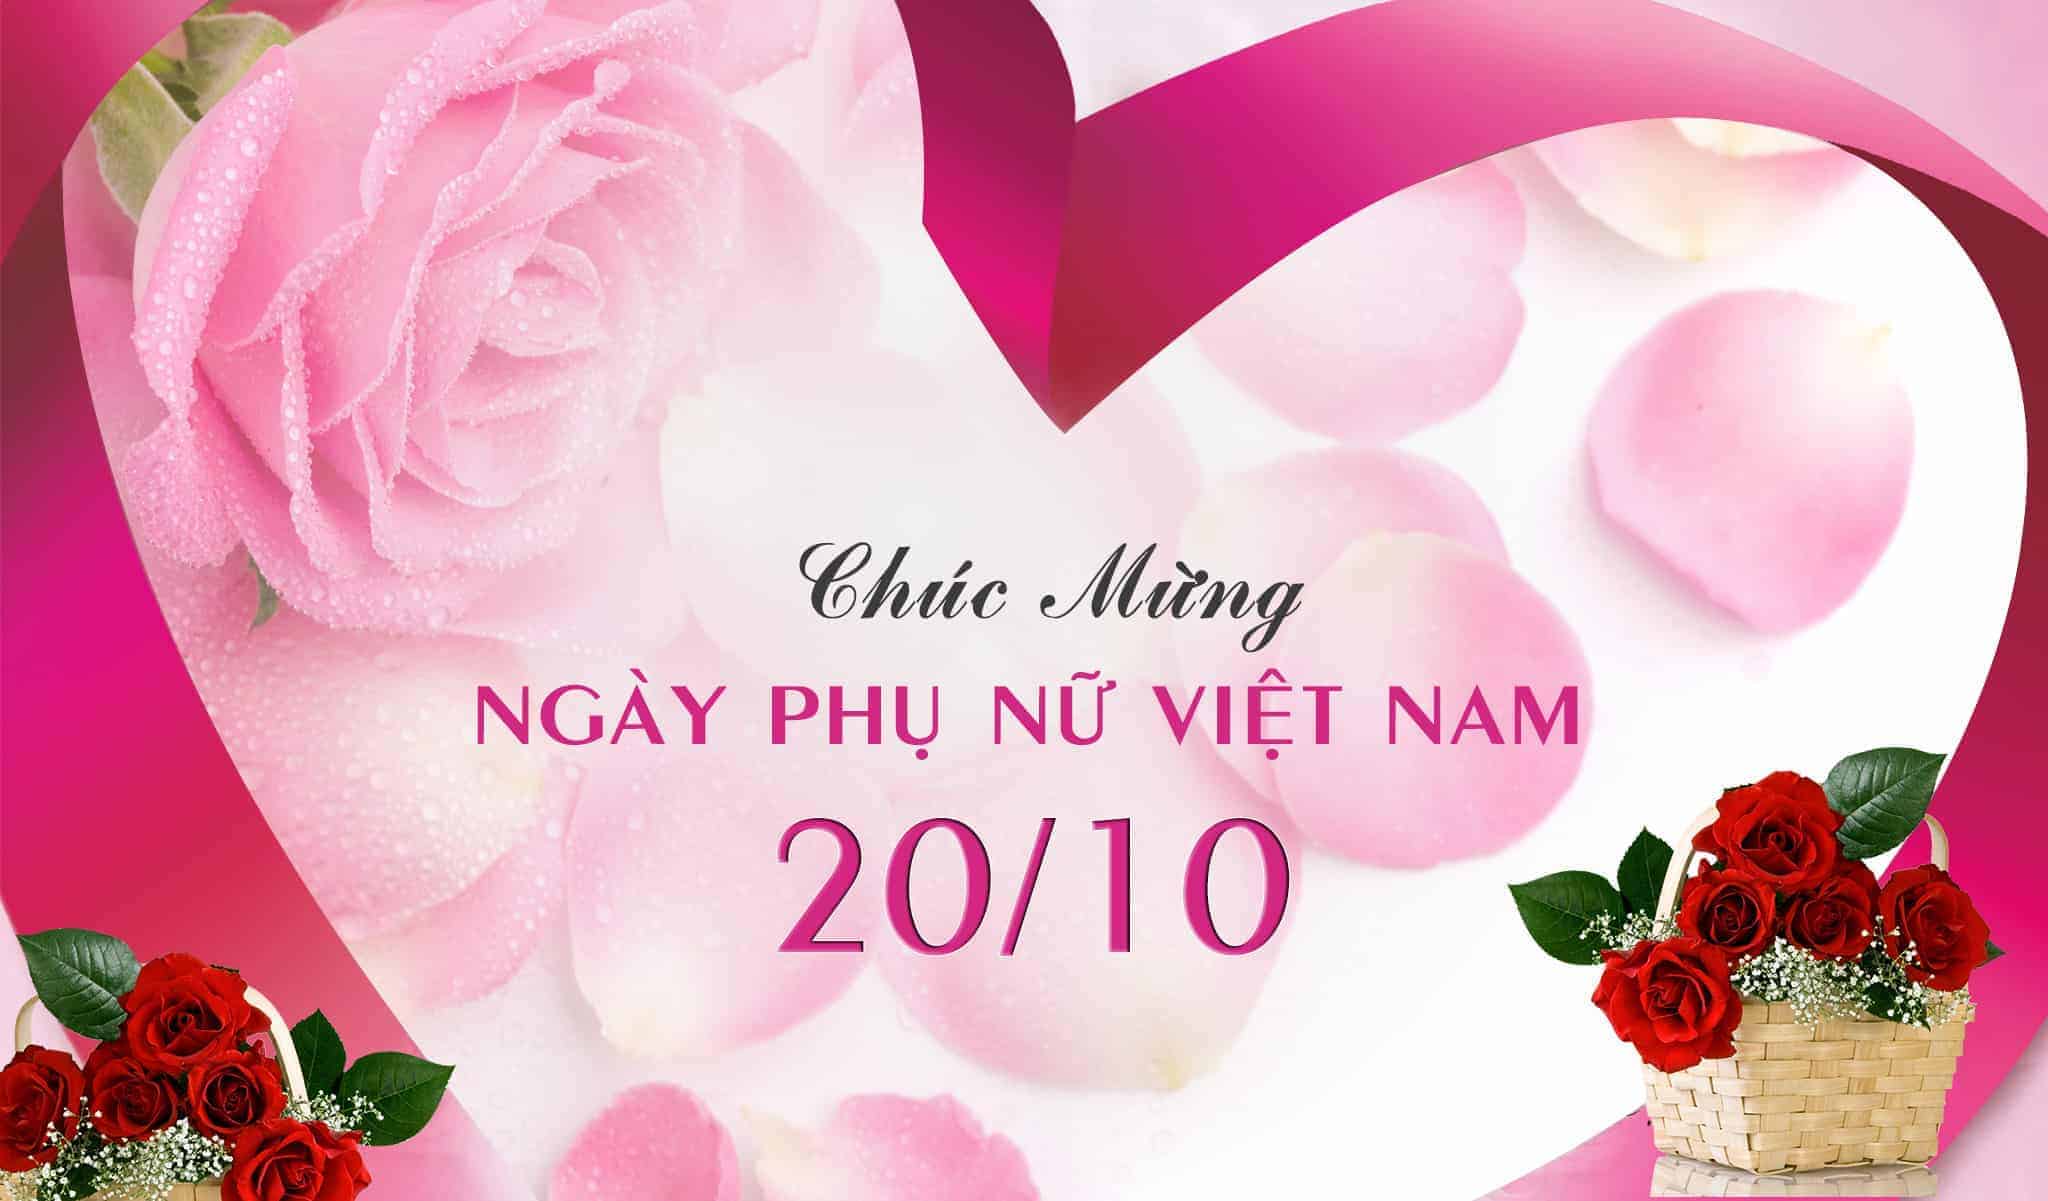  Lời chúc mừng ngày Phụ nữ Việt Nam 2010